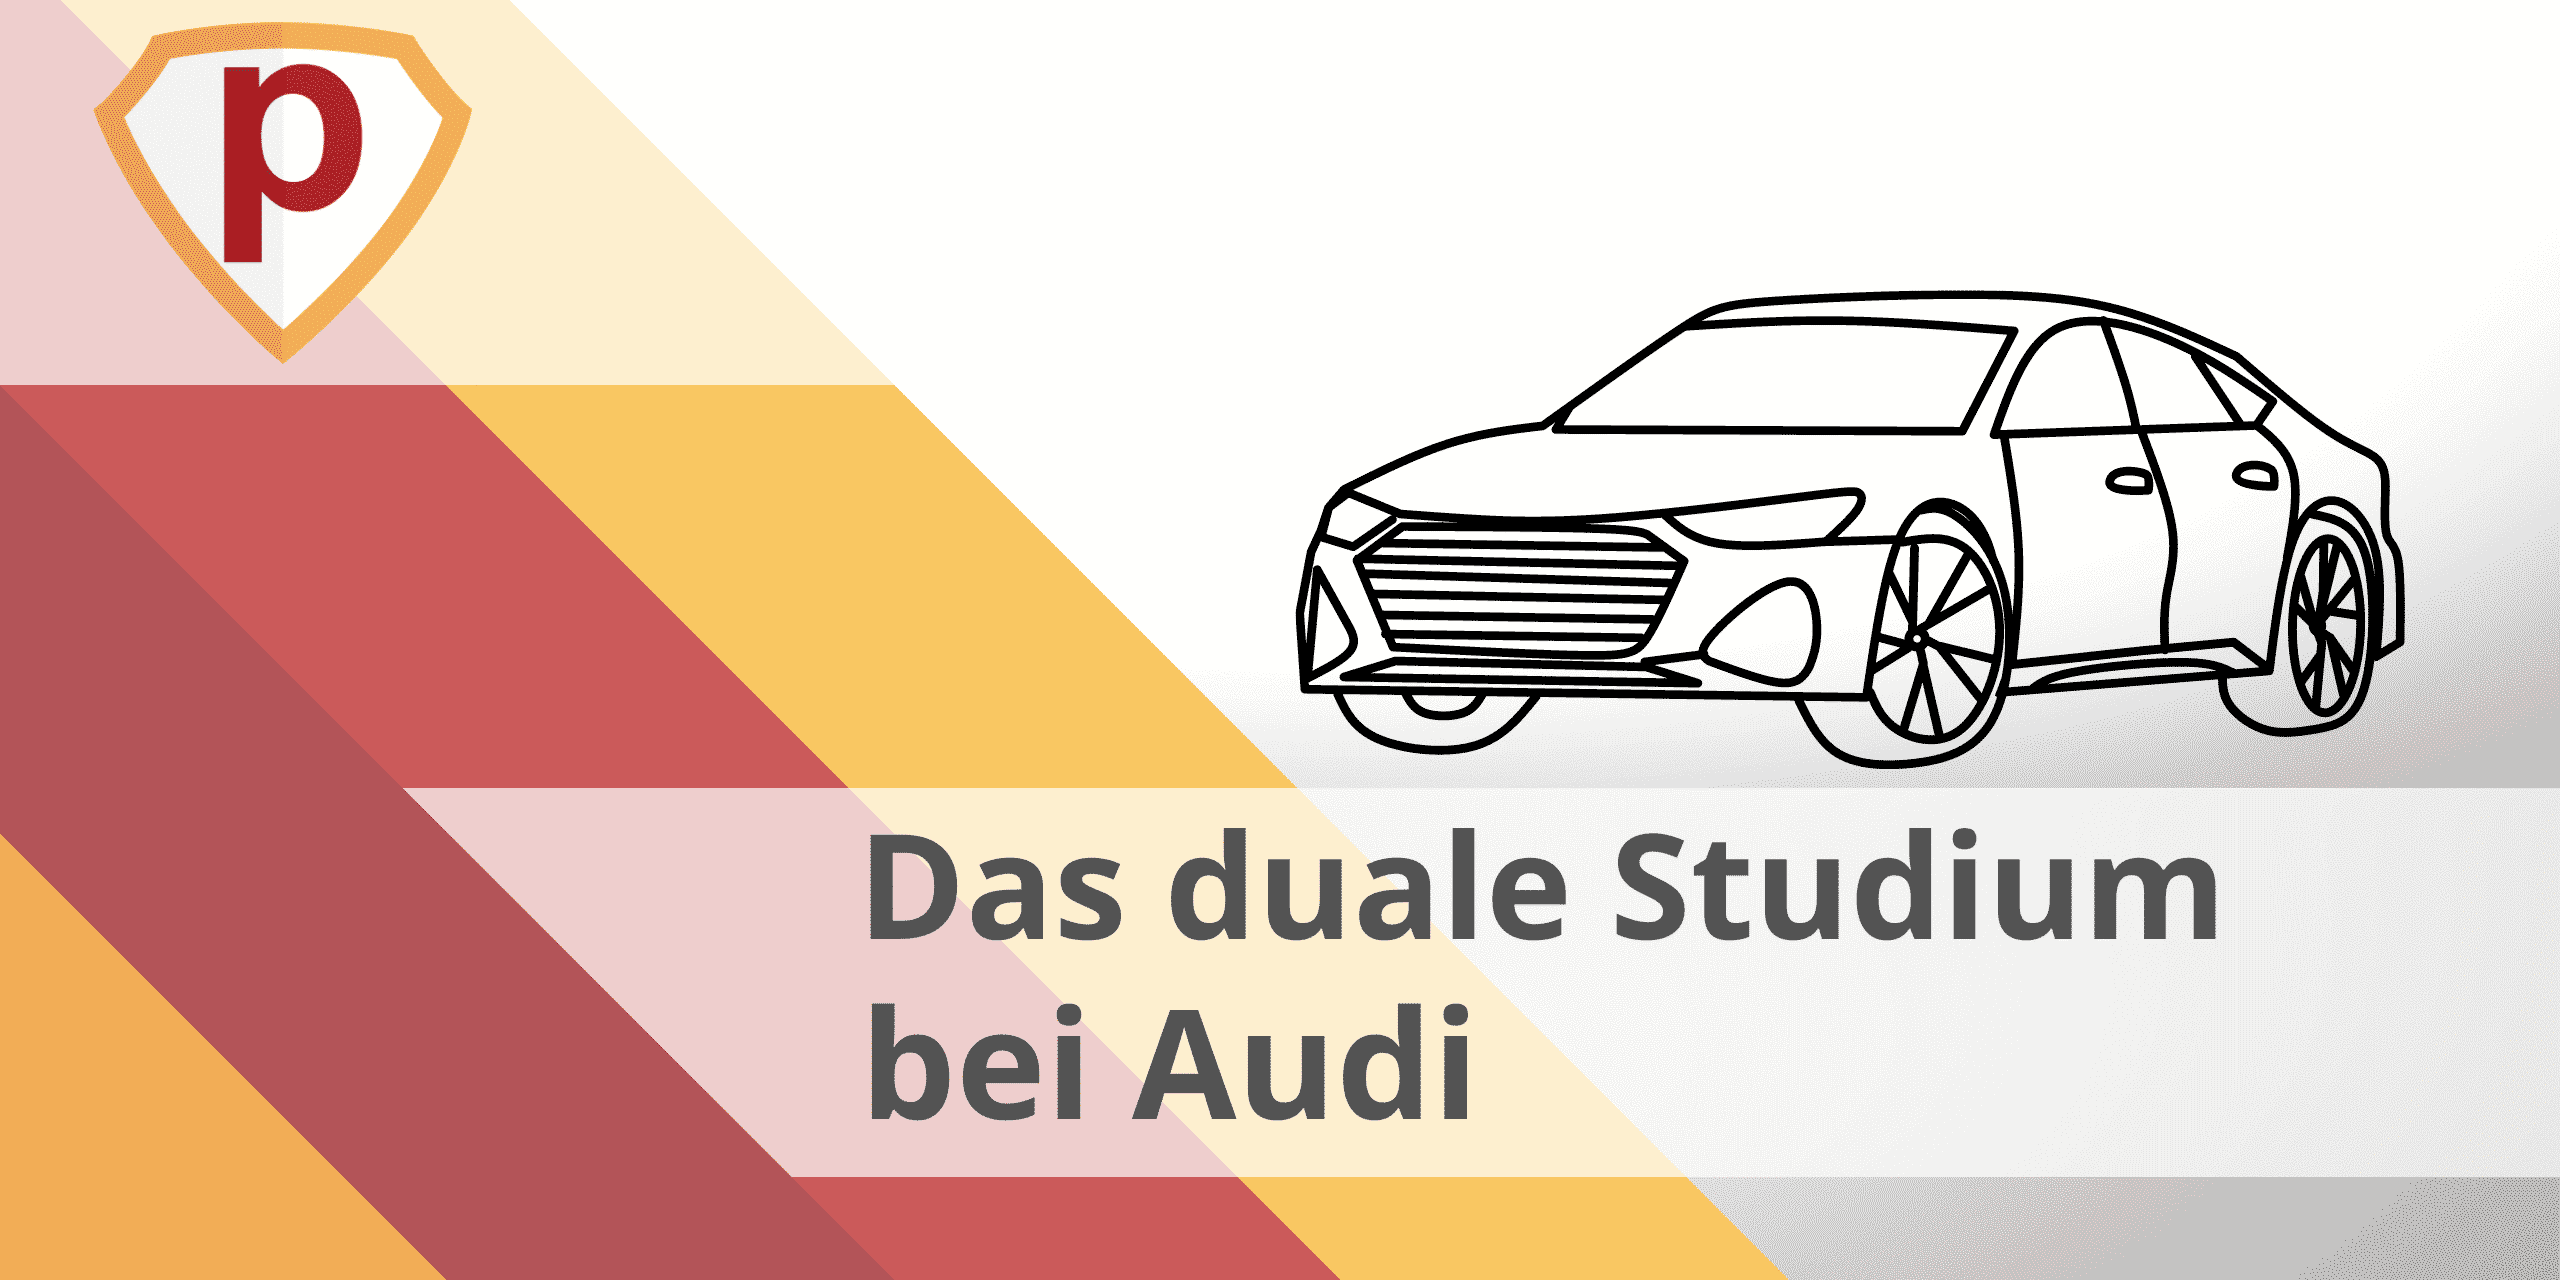 Duales Studium bei Audi – Tipps und Tricks für Bewerbung und Vorbereitung